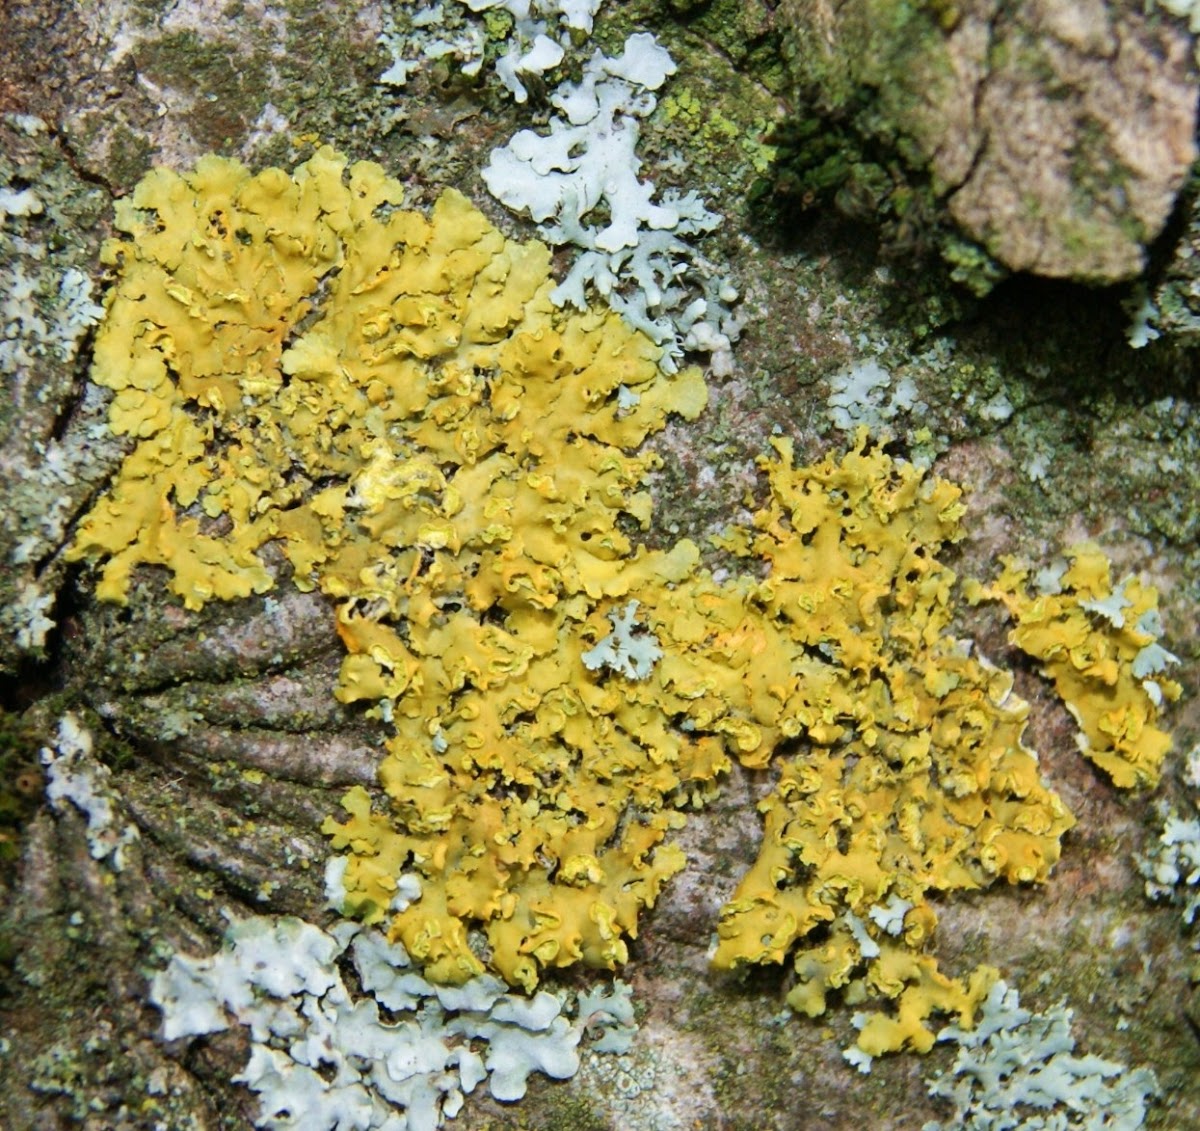 Common Orange Lichen